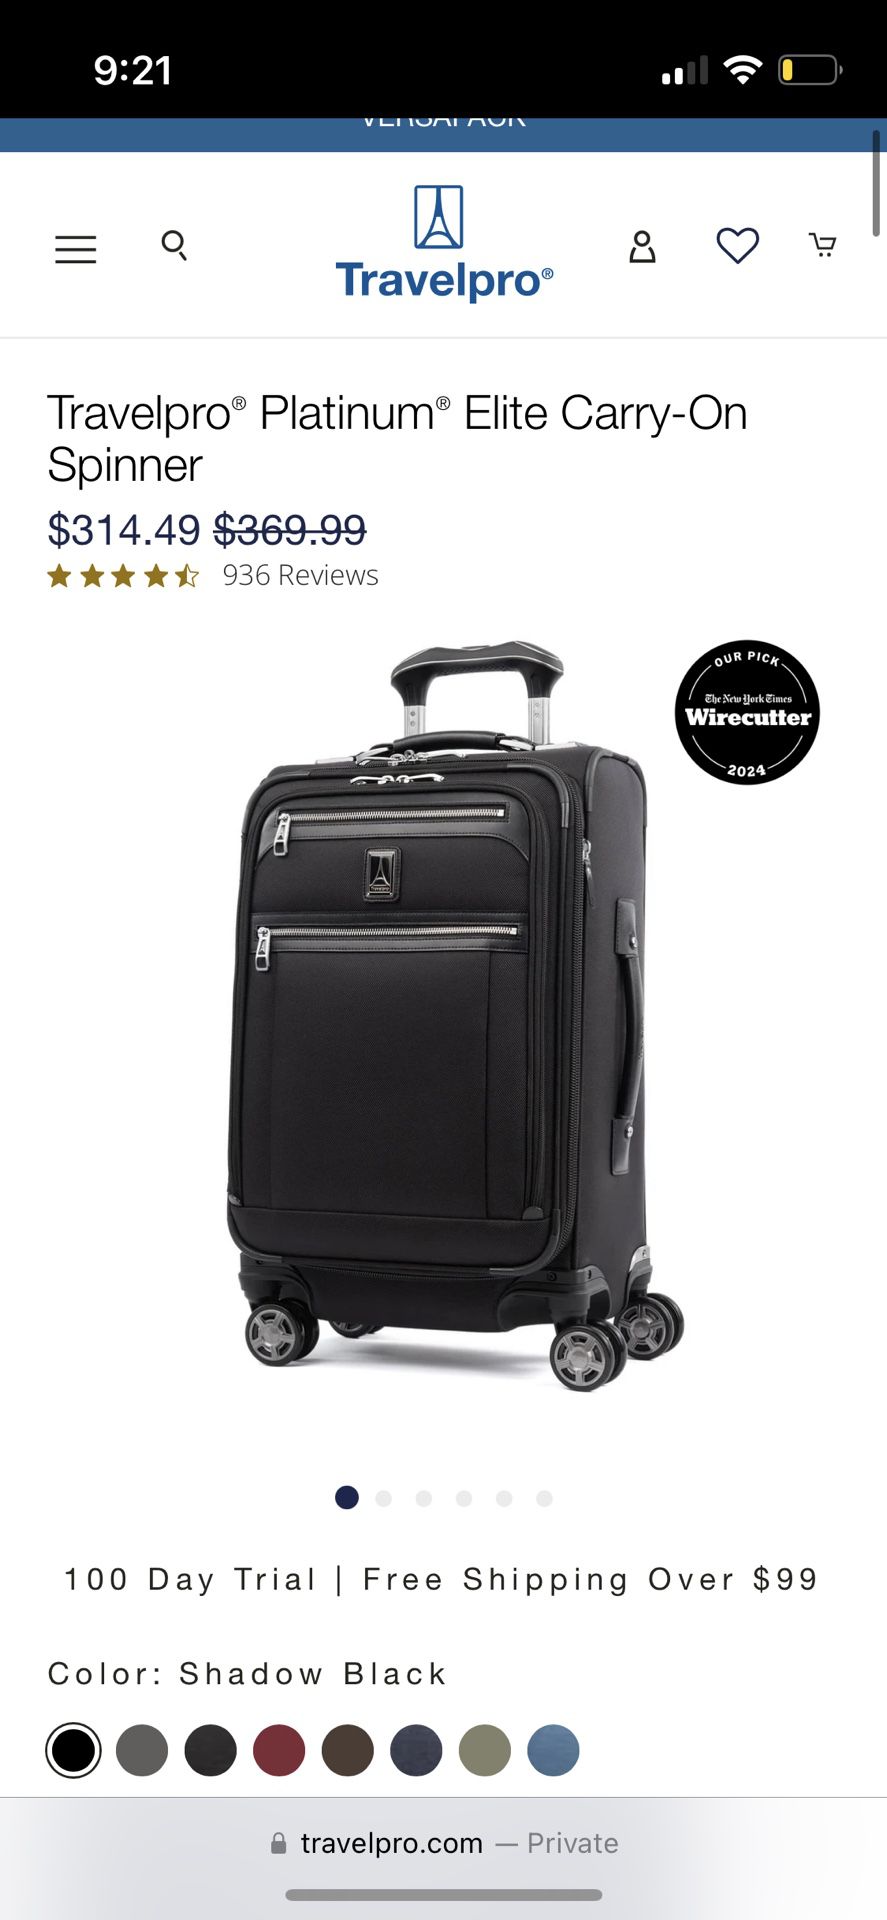 Travel Pro carry on luggage Platnium Elite